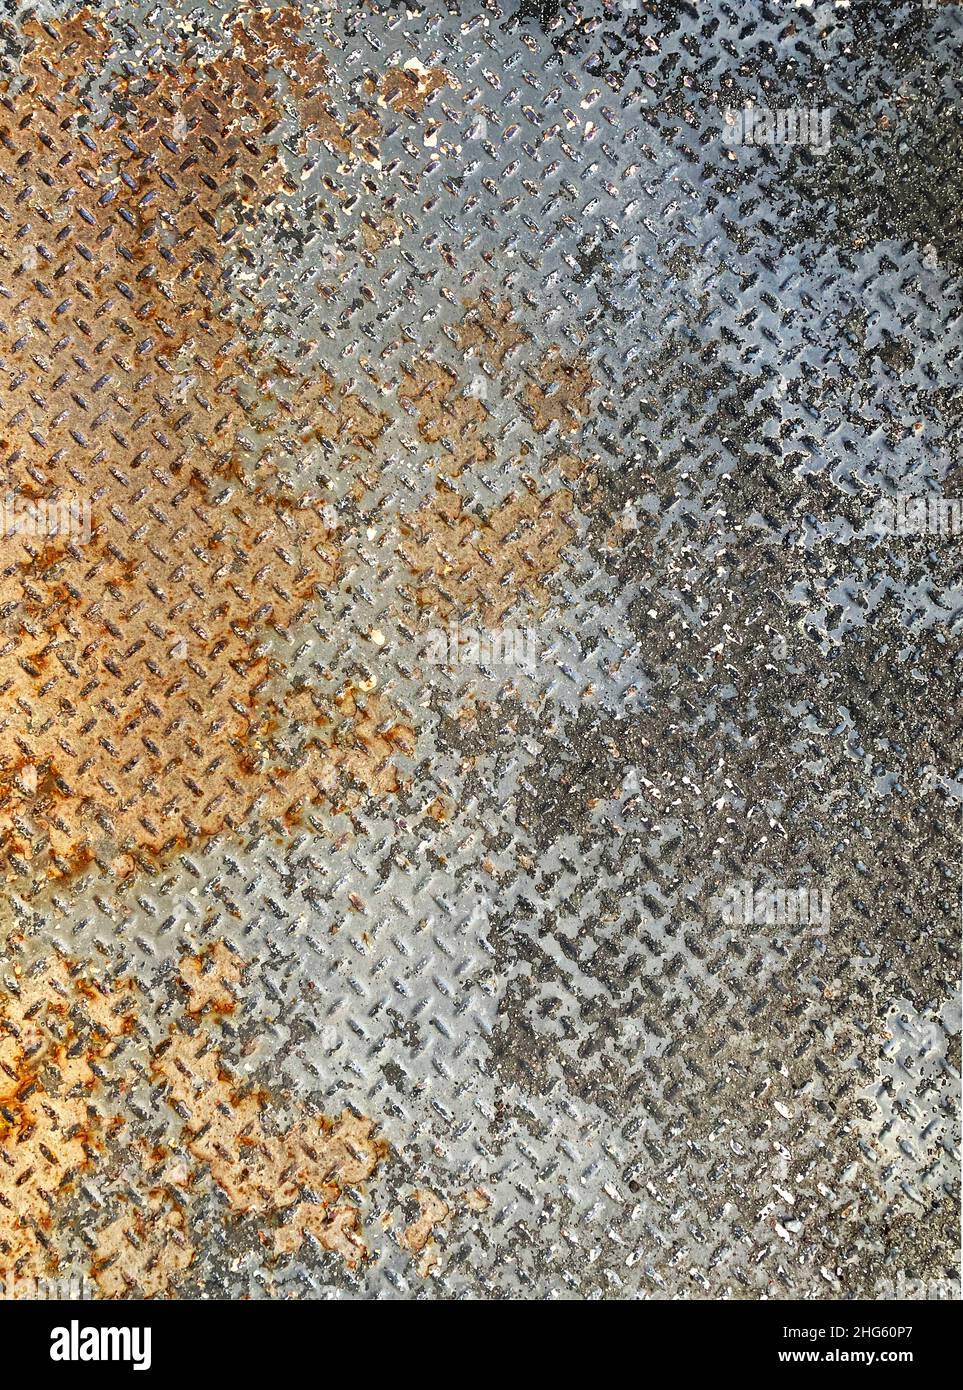 Una textura antigua, oxidada, descascarada del suelo de la placa de diamante Foto de stock